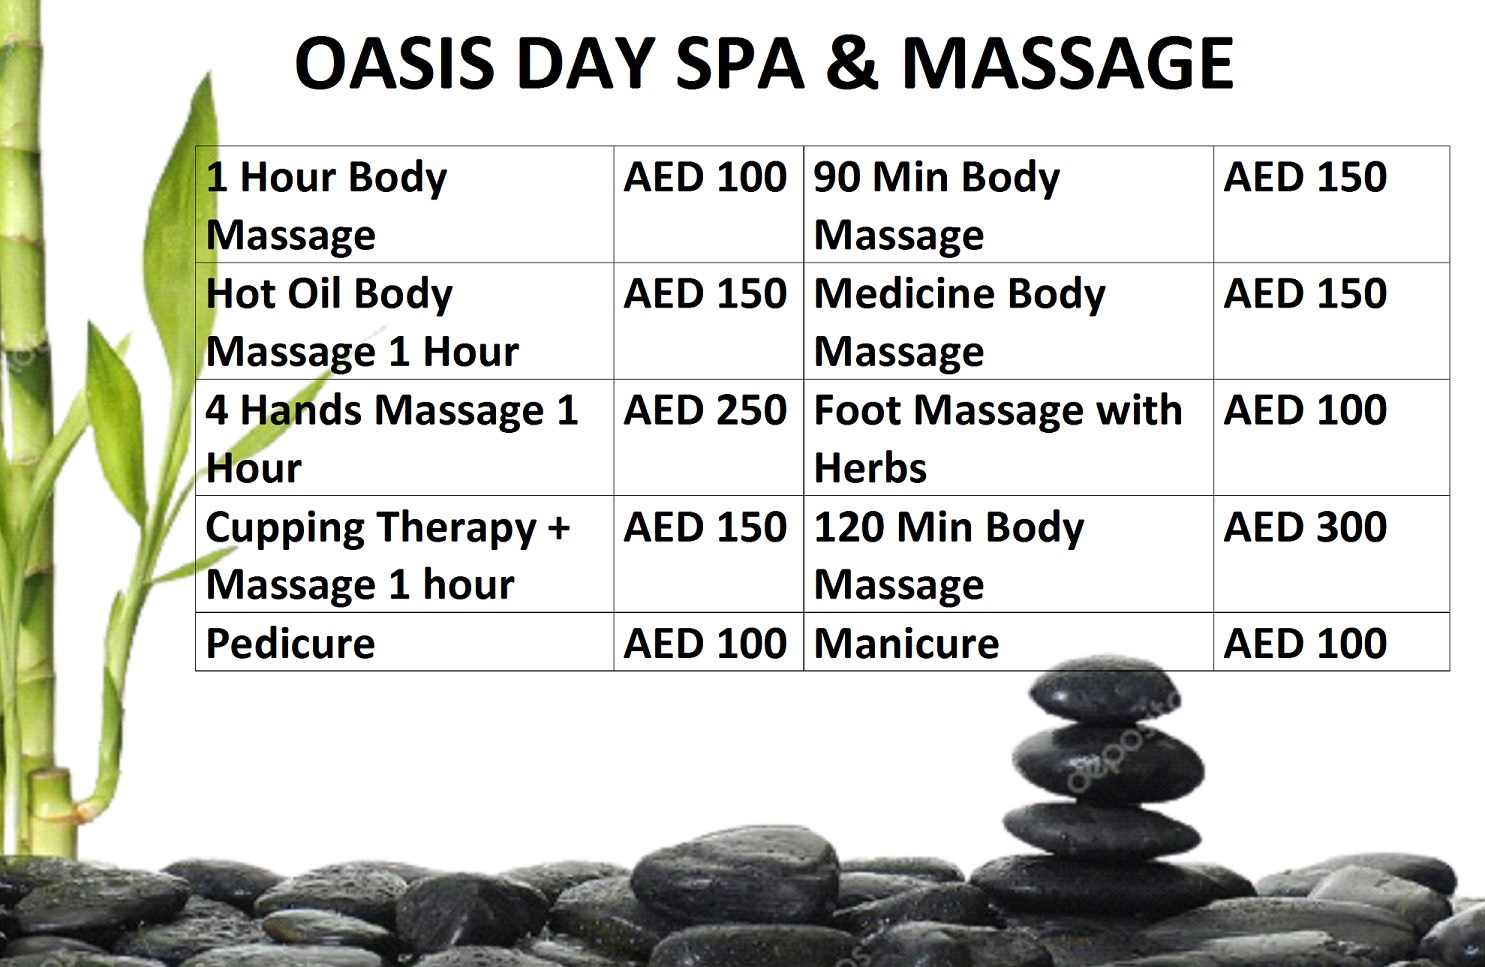 Best Massage Service In Sheikh Zayed Road Best Massage Service In Dubai Open 24hrs